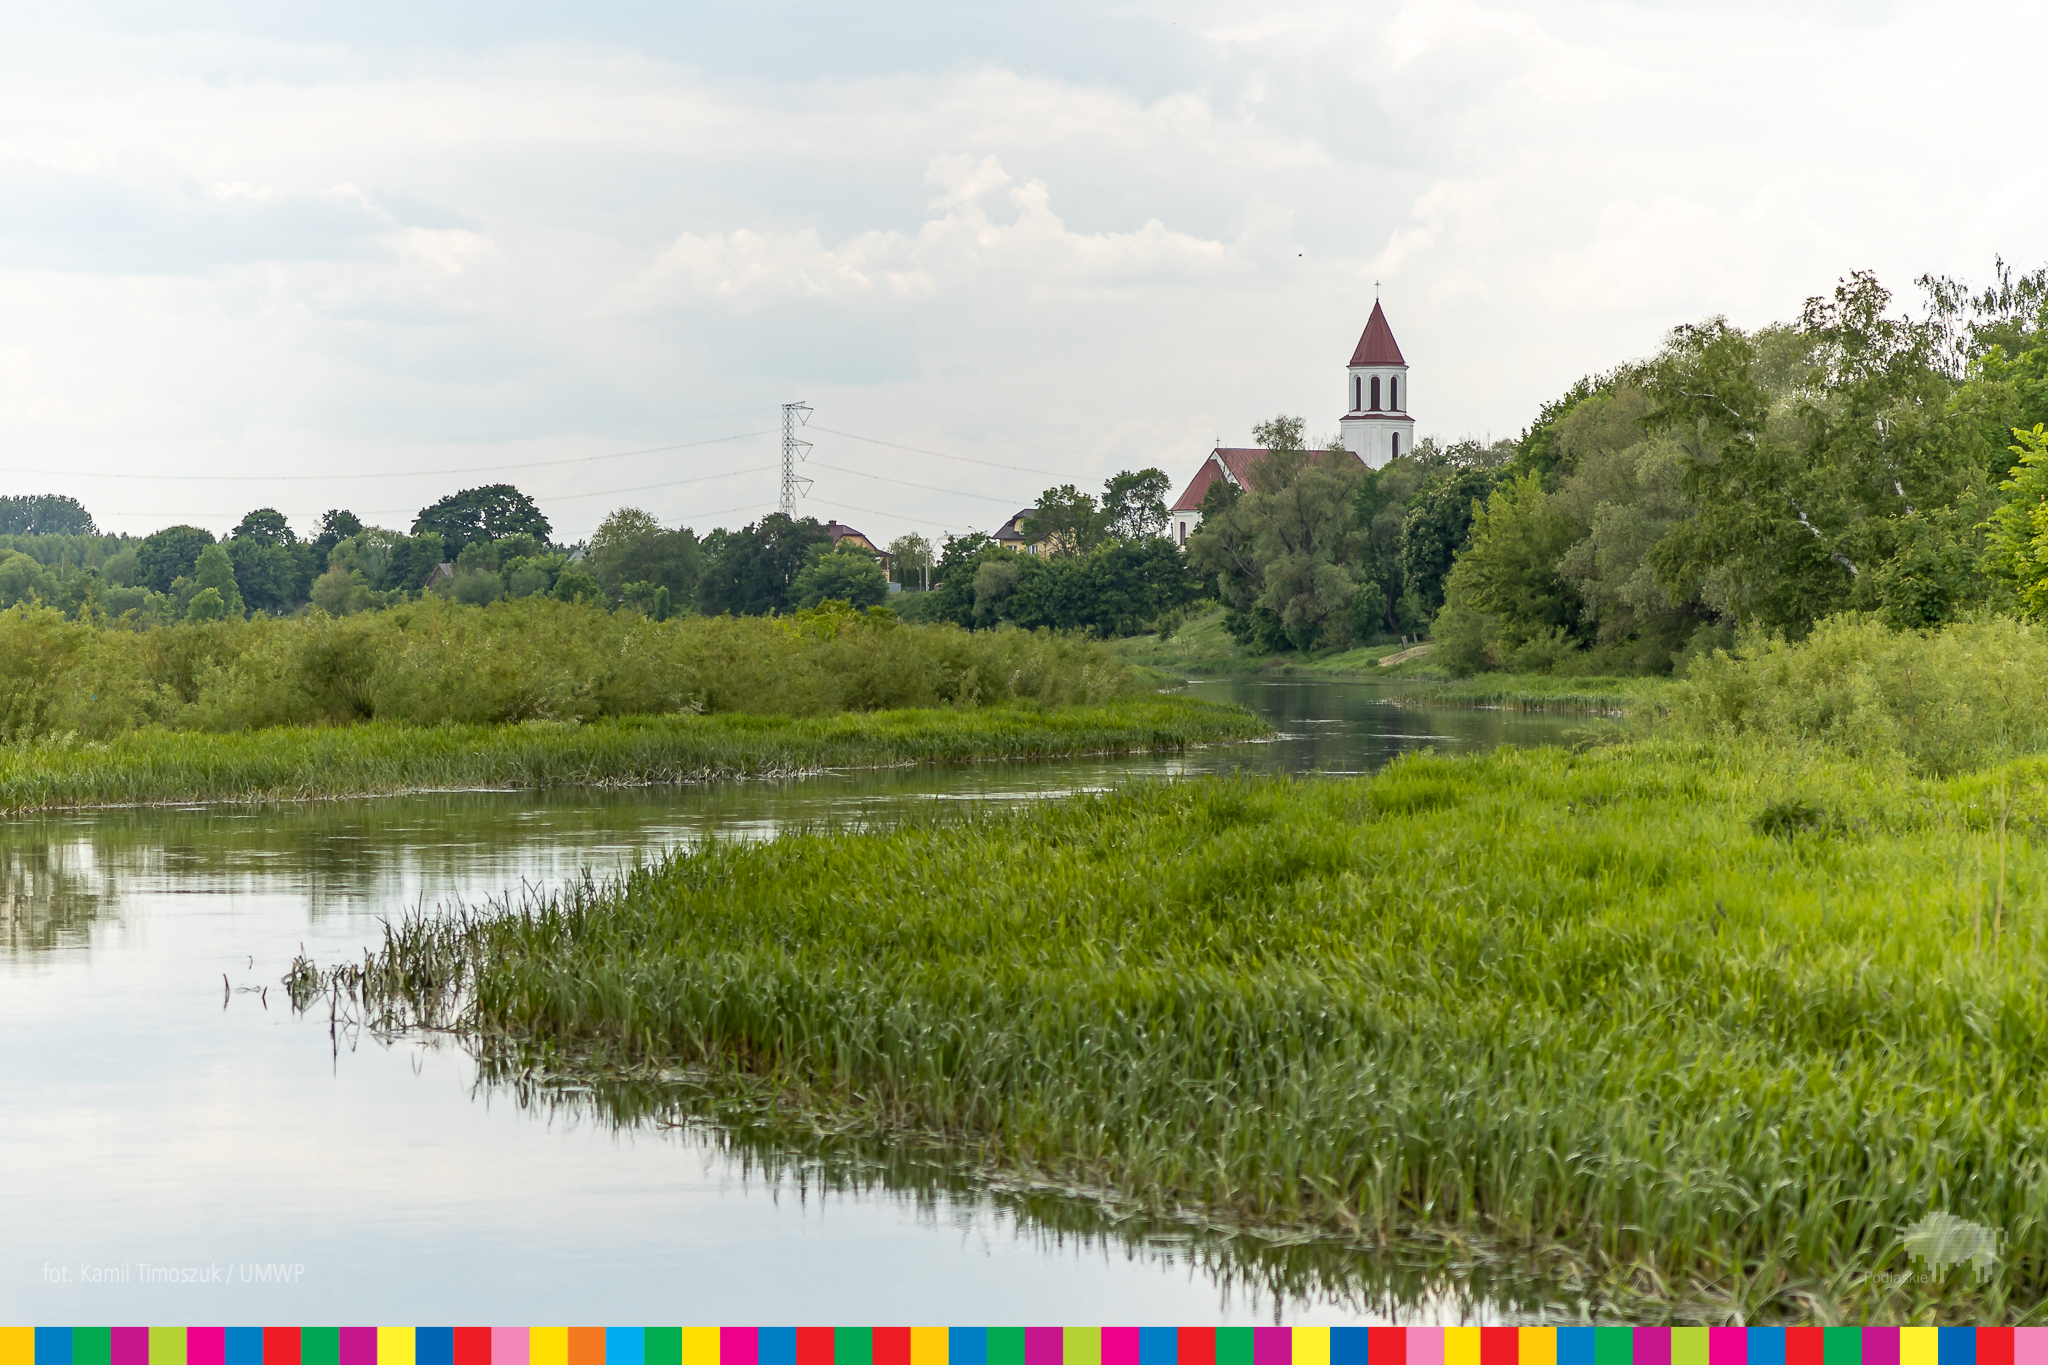 Rzeka i tereny zielone nad rzeką. W oddali wiczoczne są wieże kościoła